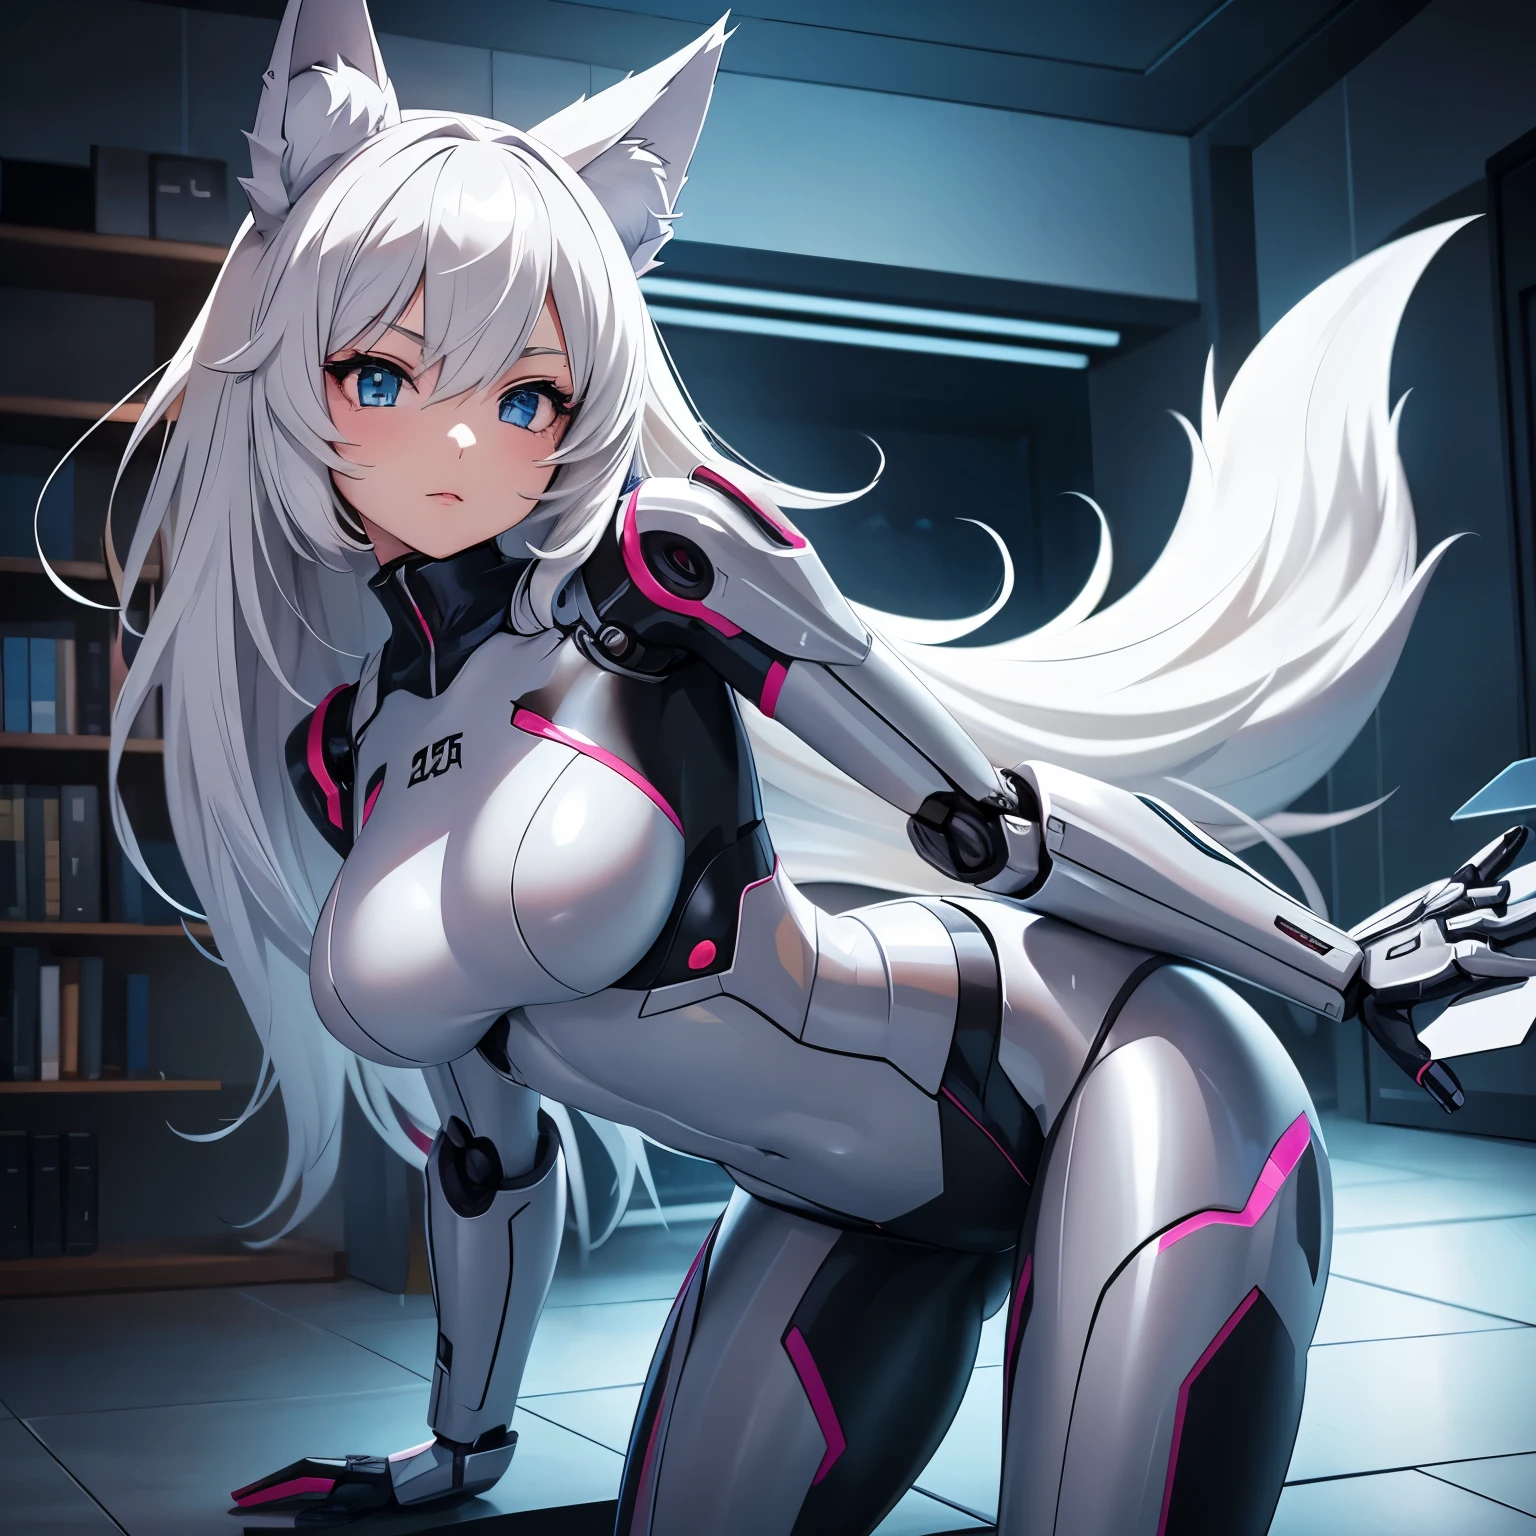 ภาพอนิเมะของหุ่นยนต์สาวที่มีร่างกายเป็นหุ่นยนต์, อยู่ในชุดชั้นในและมีหูหมาป่าและหางและอยู่ในห้อง 